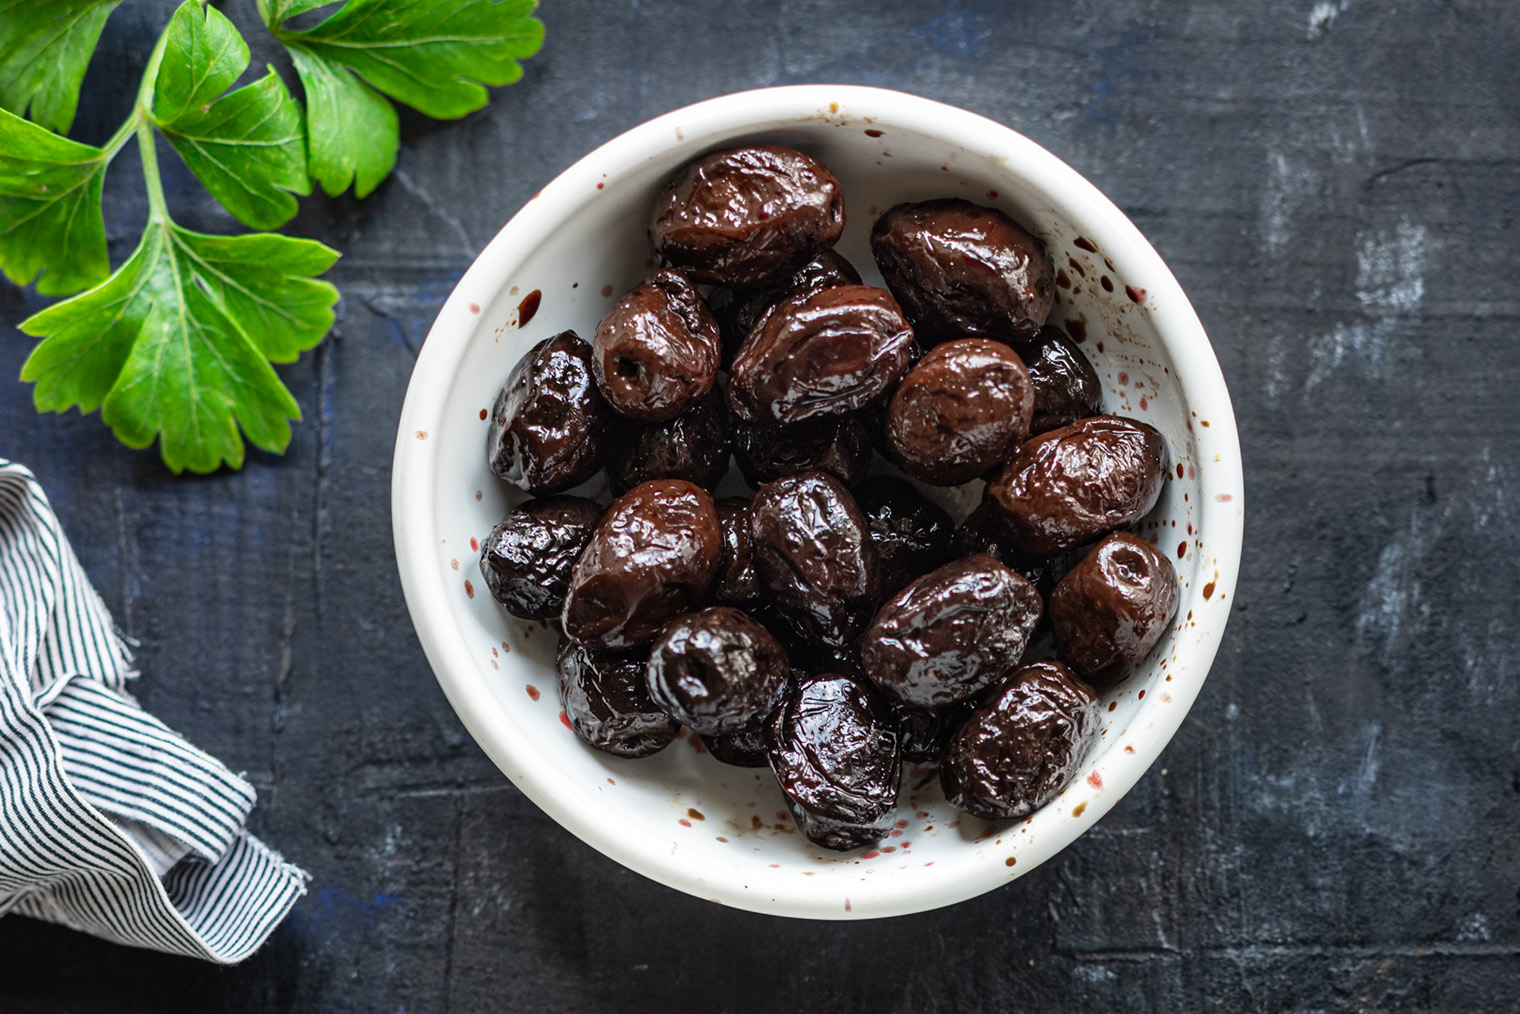 Сушеные оливки по вкусу похожи на кислый пережеванный сапог. Фотография: Alesia.Bierliezova / Shutterstock / FOTODOM